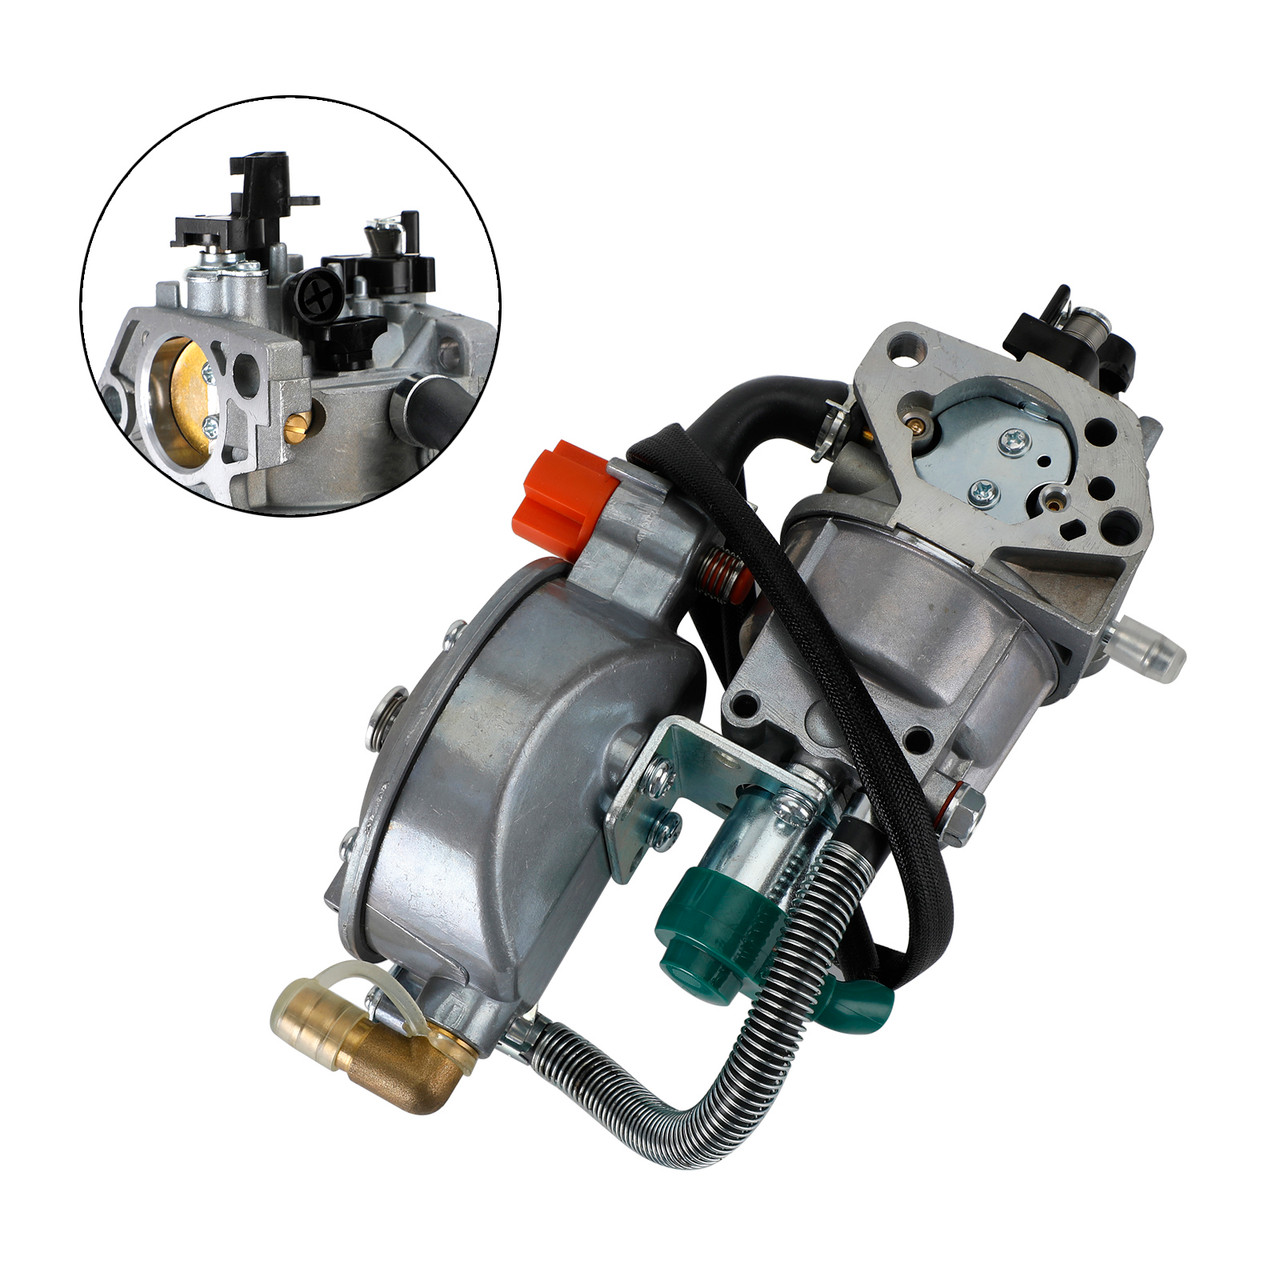 LPG NG Dual Fuel Carburetor For Harbor Freight Predator 6500 5500 8250 Generator